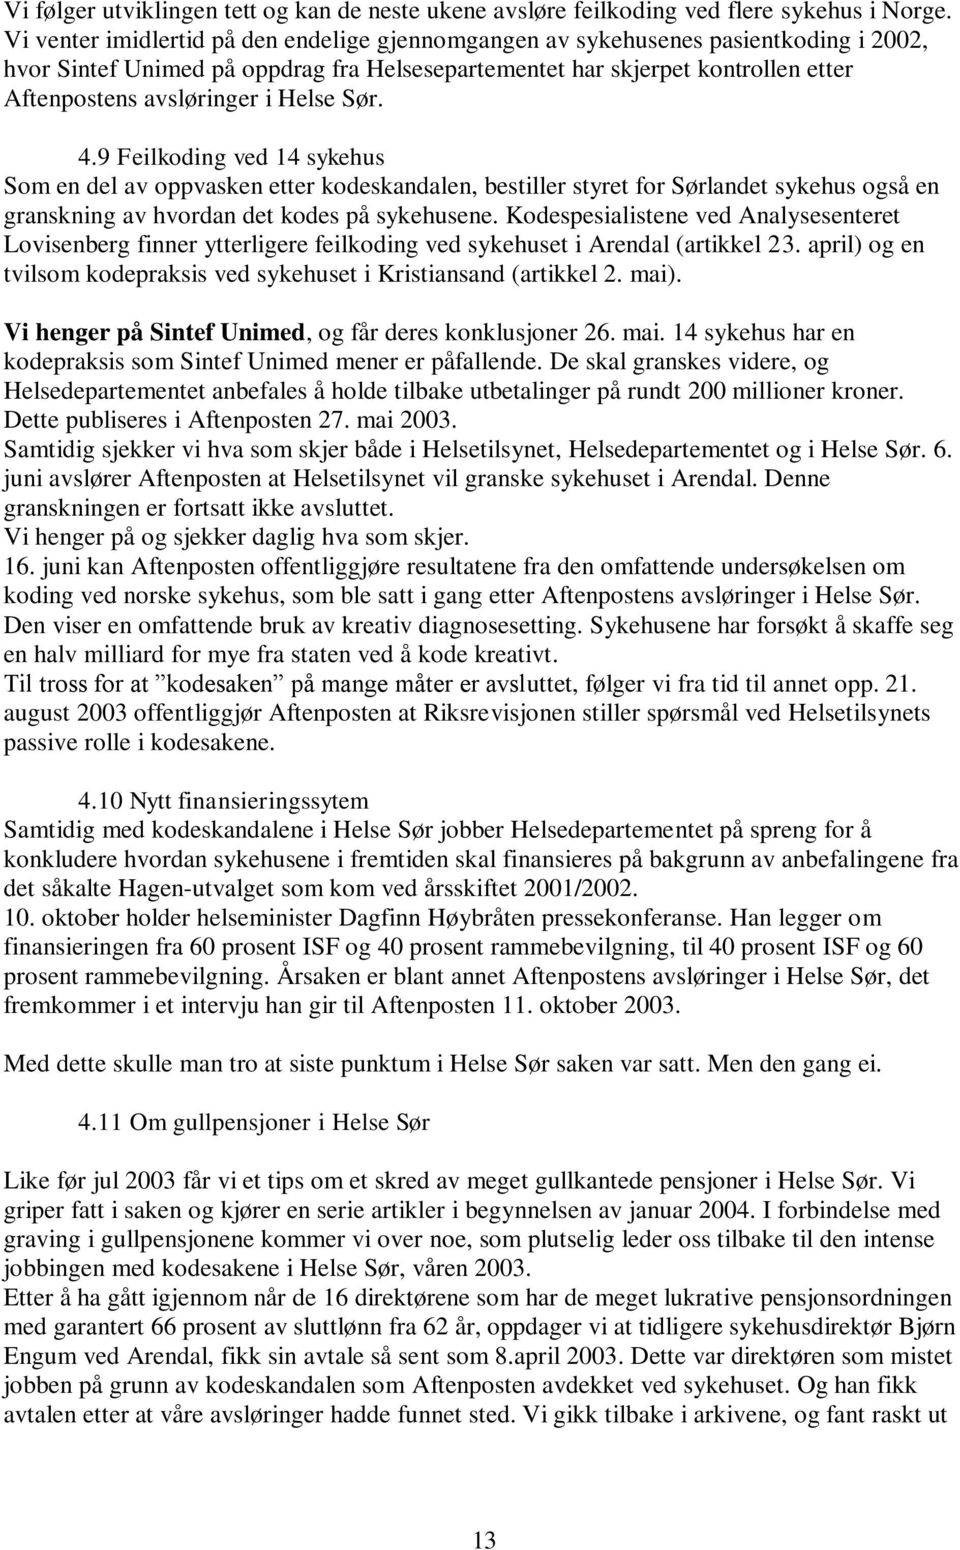 Helse Sør. 4.9 Feilkoding ved 14 sykehus Som en del av oppvasken etter kodeskandalen, bestiller styret for Sørlandet sykehus også en granskning av hvordan det kodes på sykehusene.